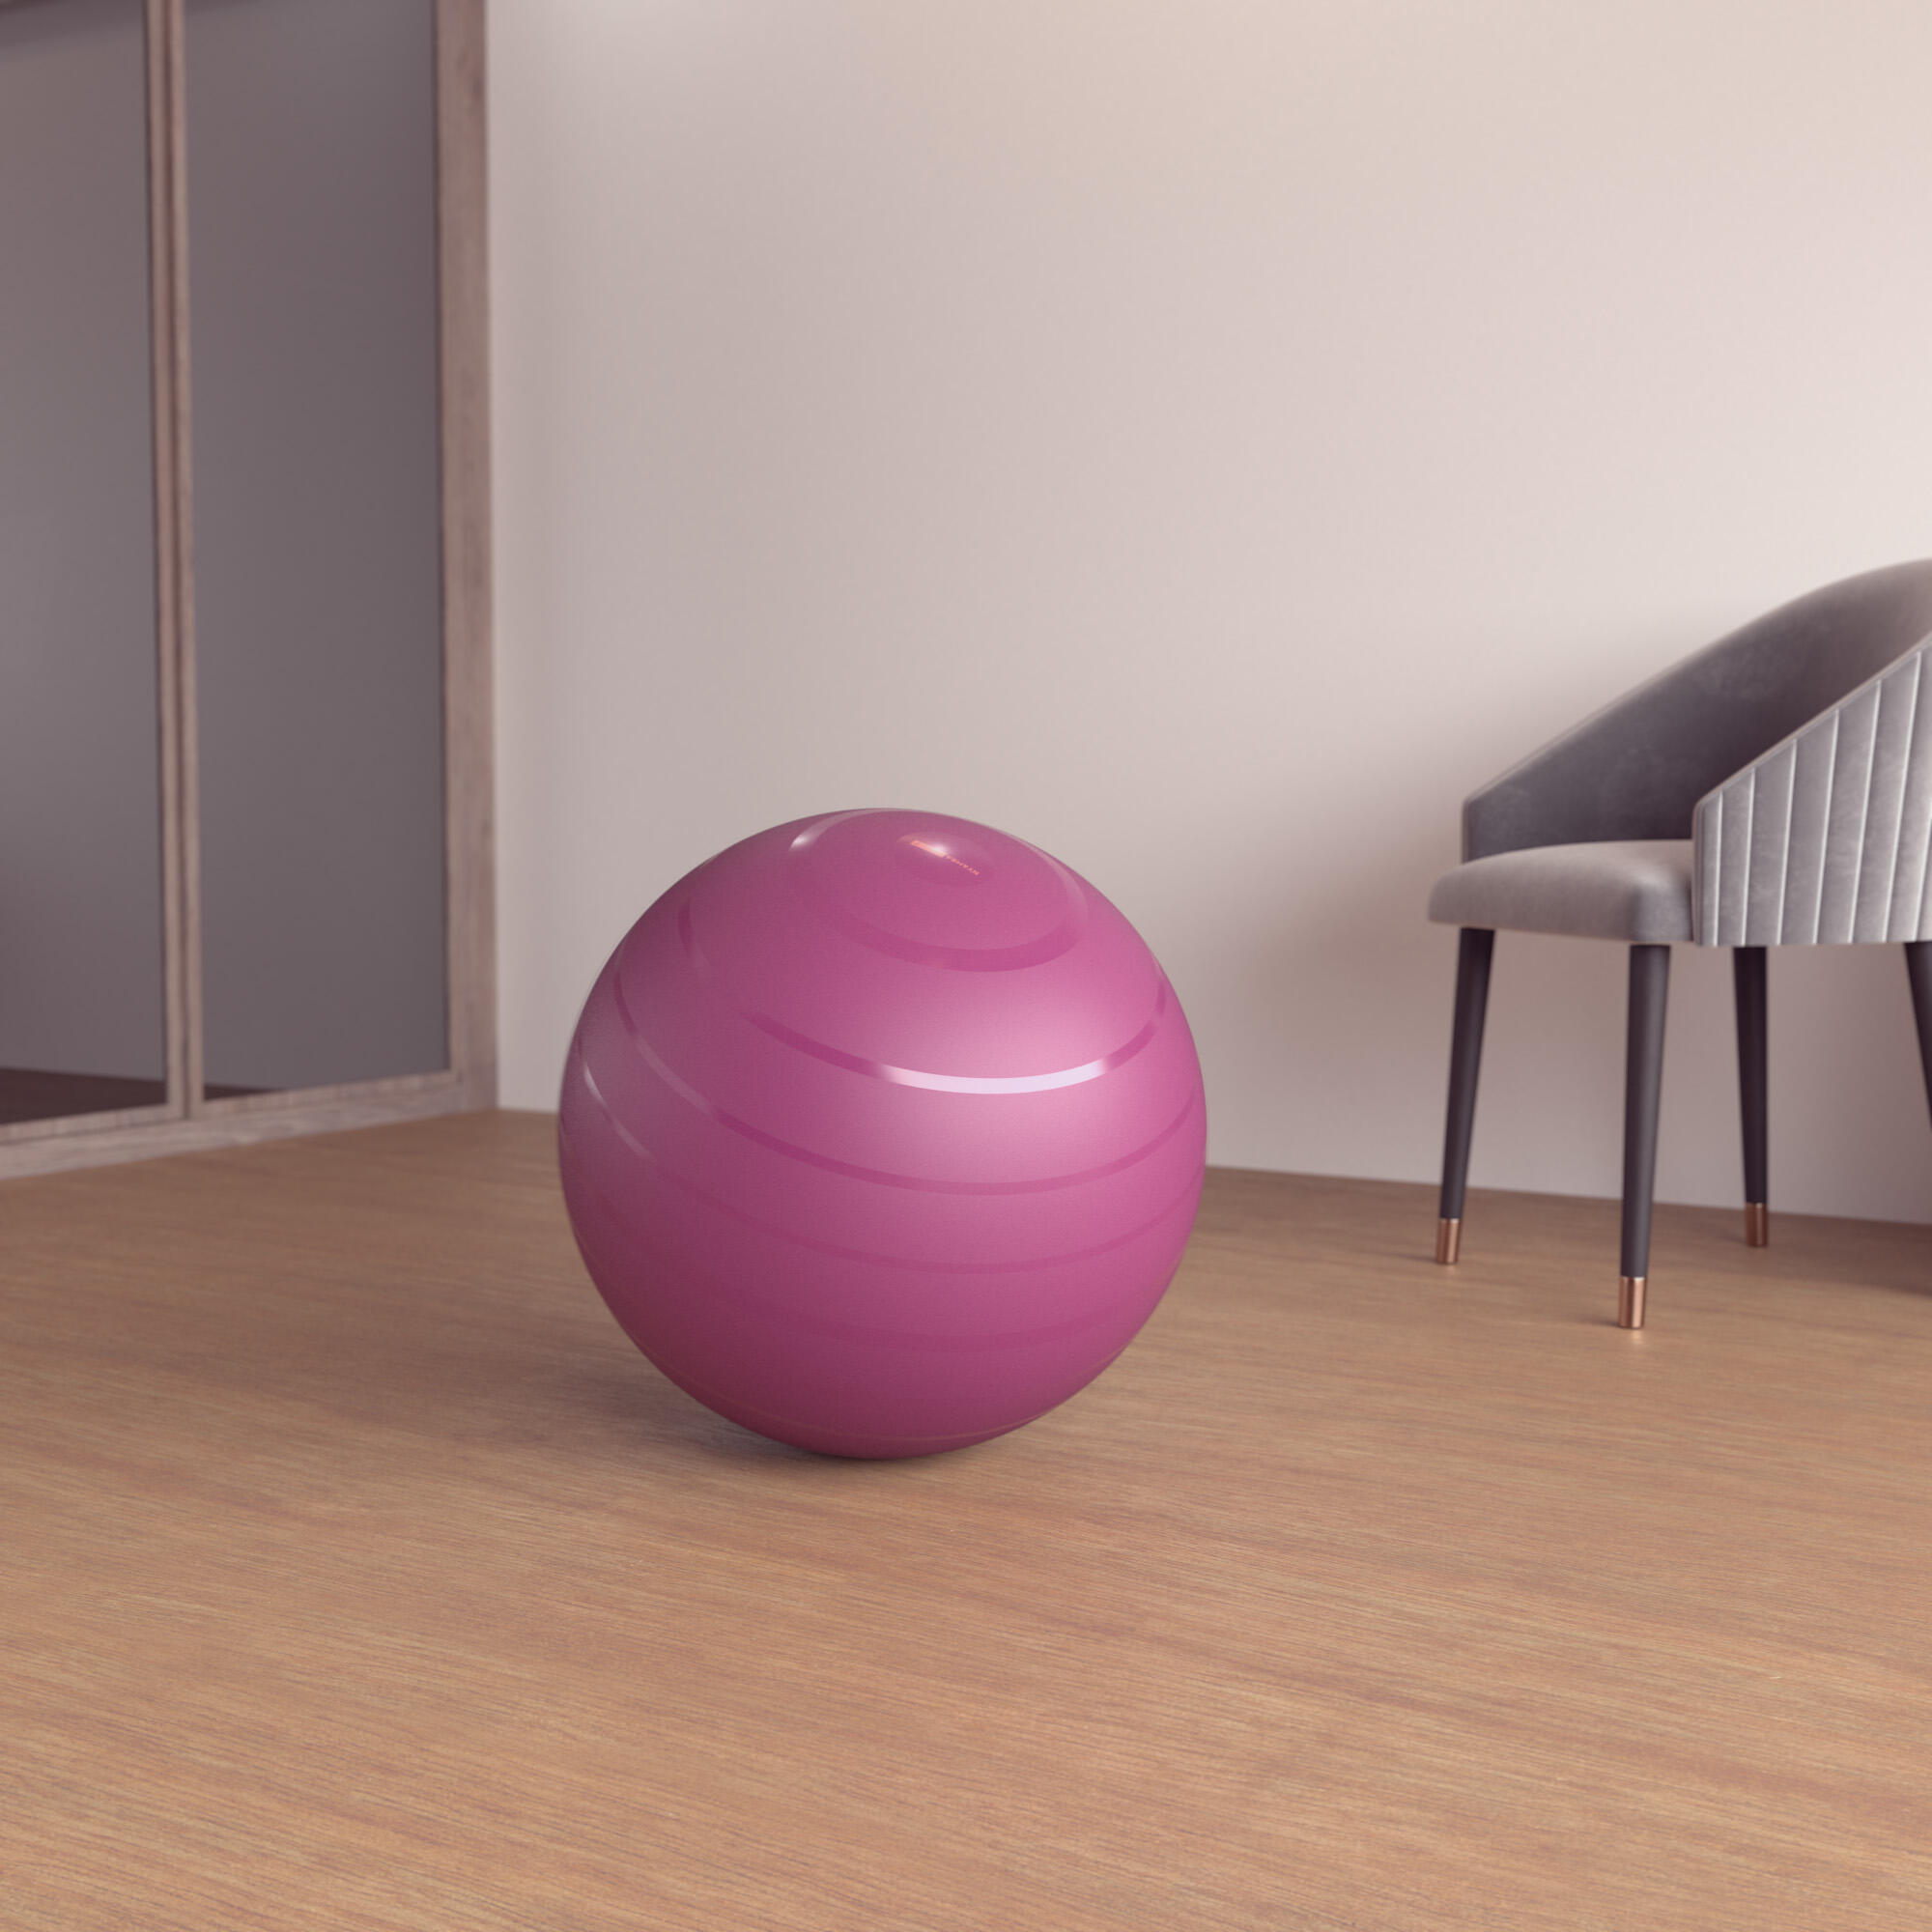 Мяч для фитнеса прочный размер 1/55 см бордовый DOMYOS, фиолетовый/сливовый/светло-розовый мороз д о шпагат дома растяжка фитнес